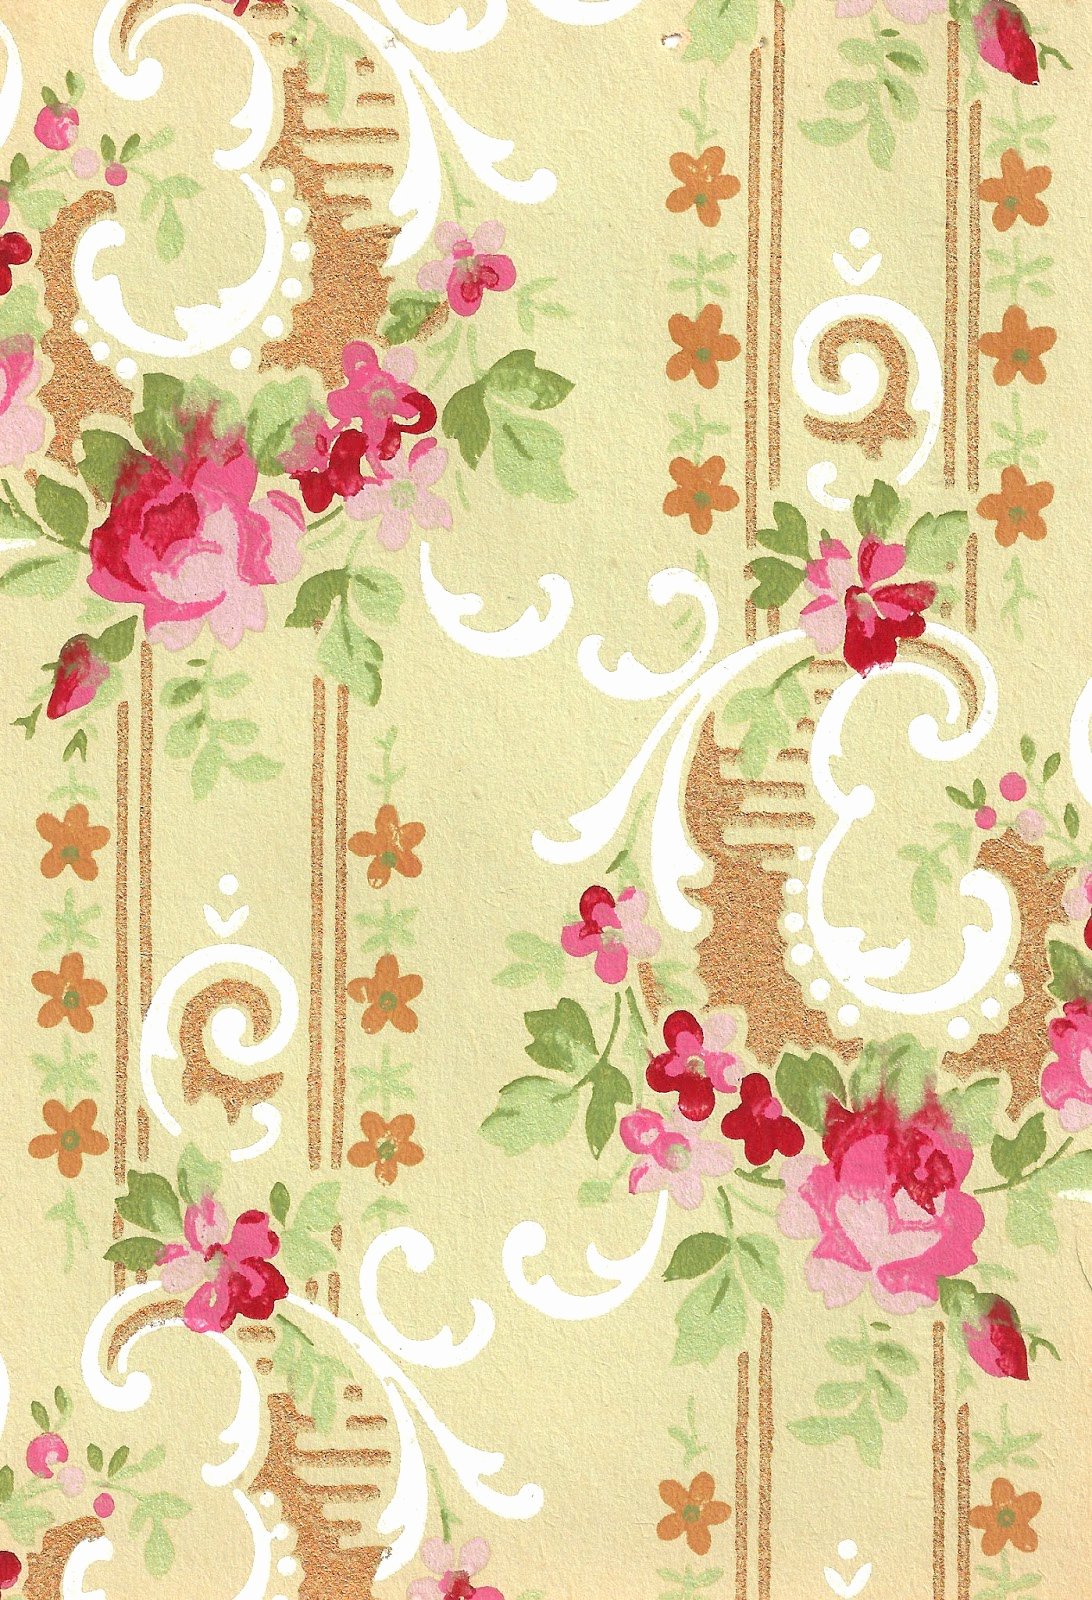 Flower Background Design Images Elegant Antique Printable Background Crafting Designs